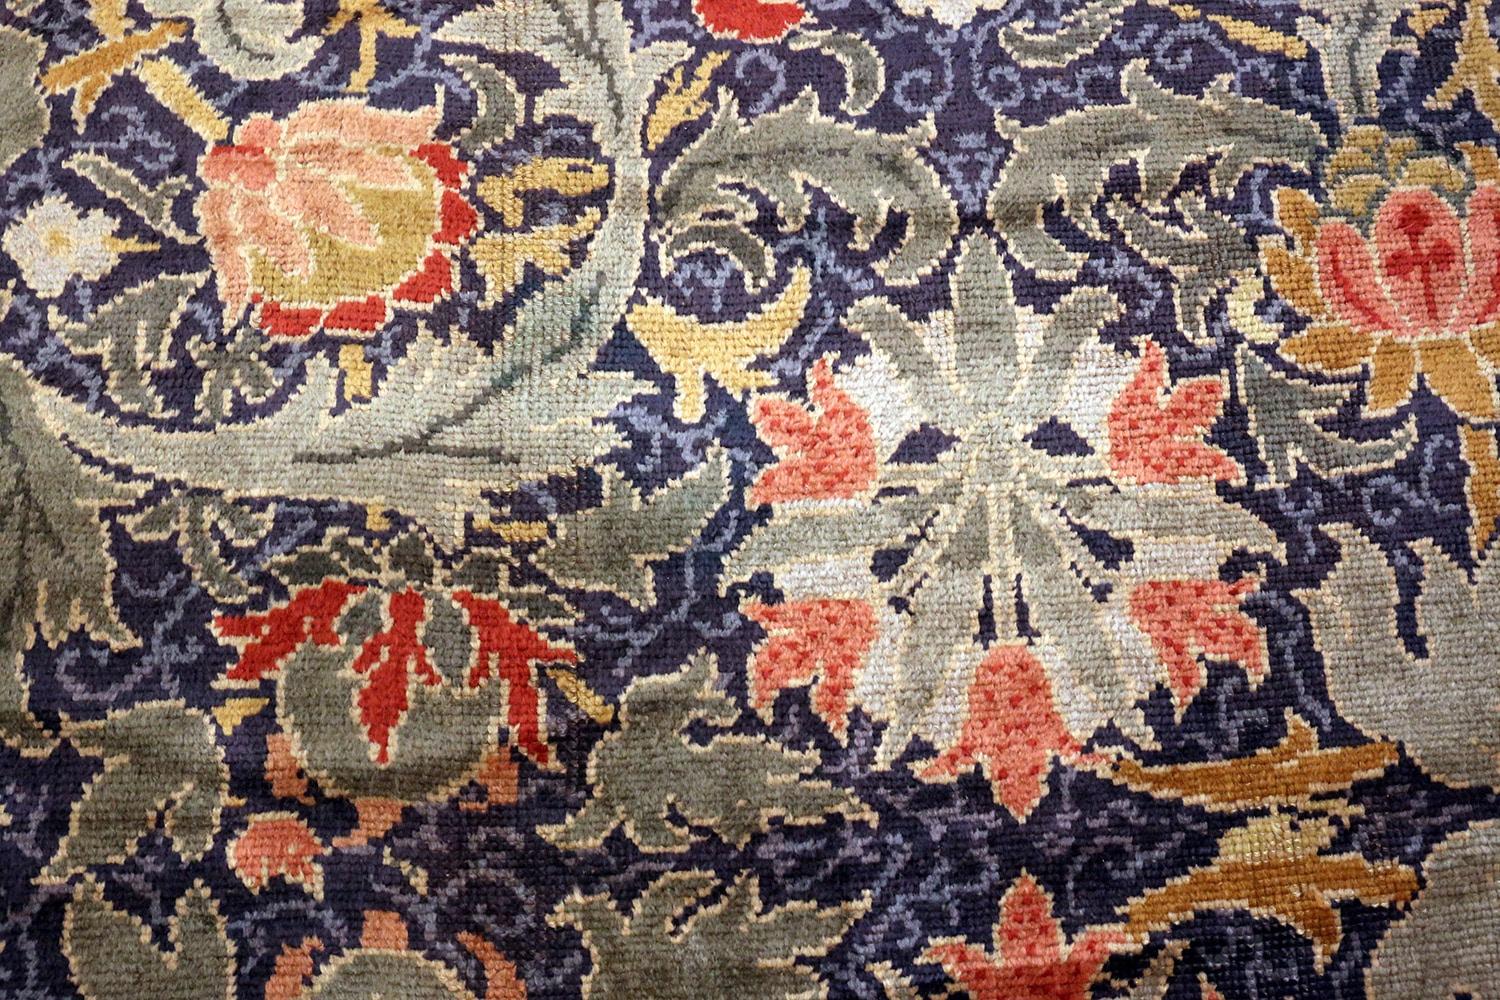 Magnifique et rare grand tapis antique Arts & Crafts William Morris Design, pays d'origine / type de tapis : Tapis irlandais, circa date : Fin du 19ème siècle. Taille : 19 ft x 30 ft (5,79 m x 9,14 m)

